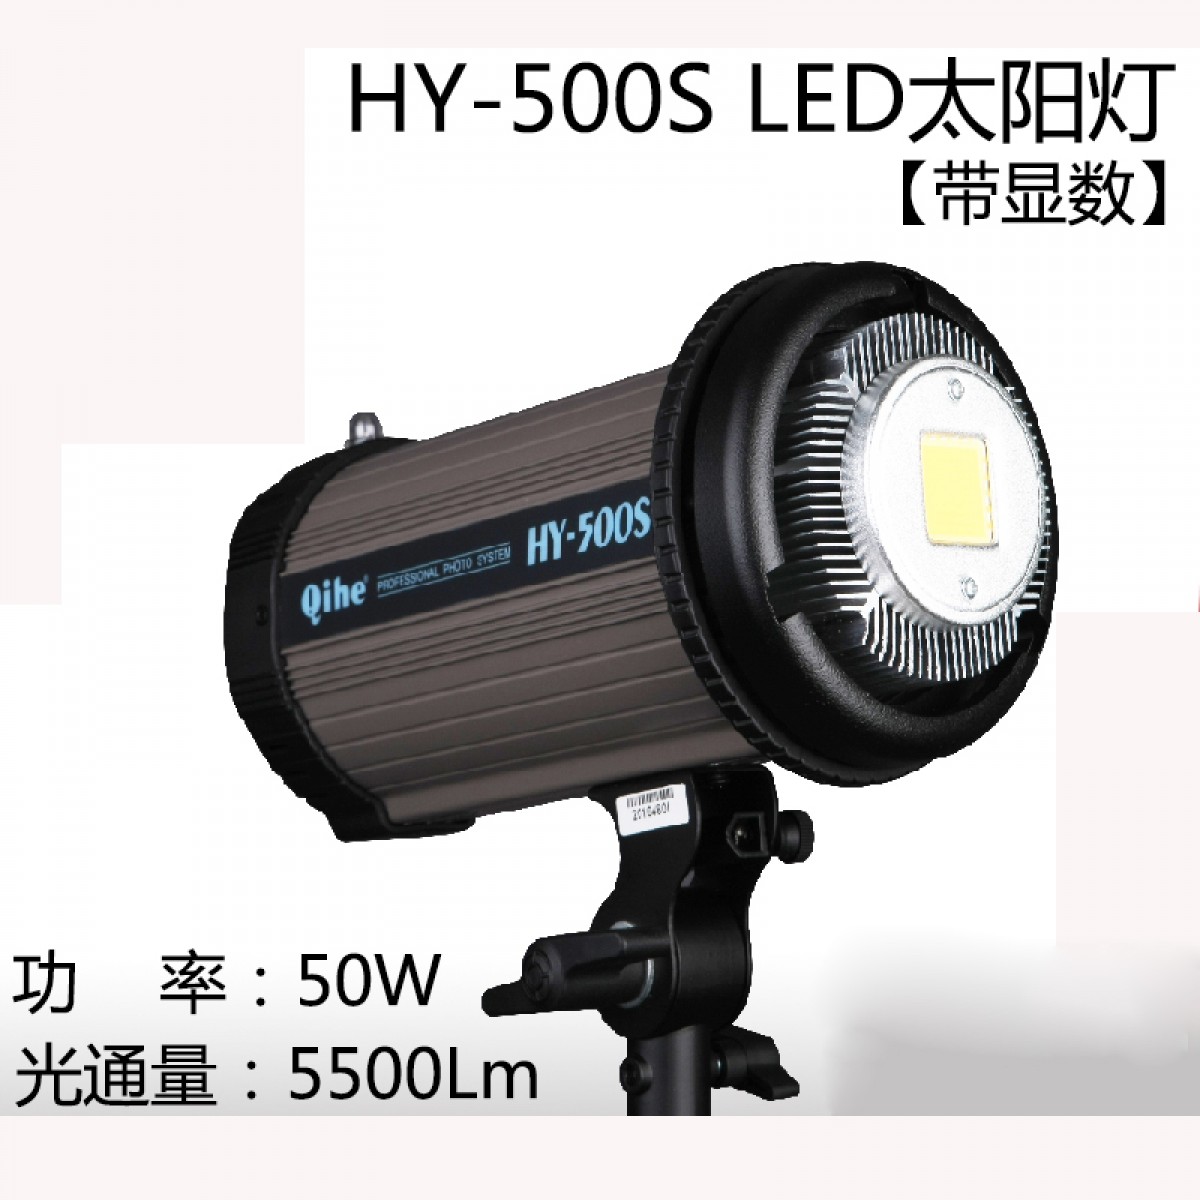 Qihe起鹤牌HY-500S LED 太阳灯